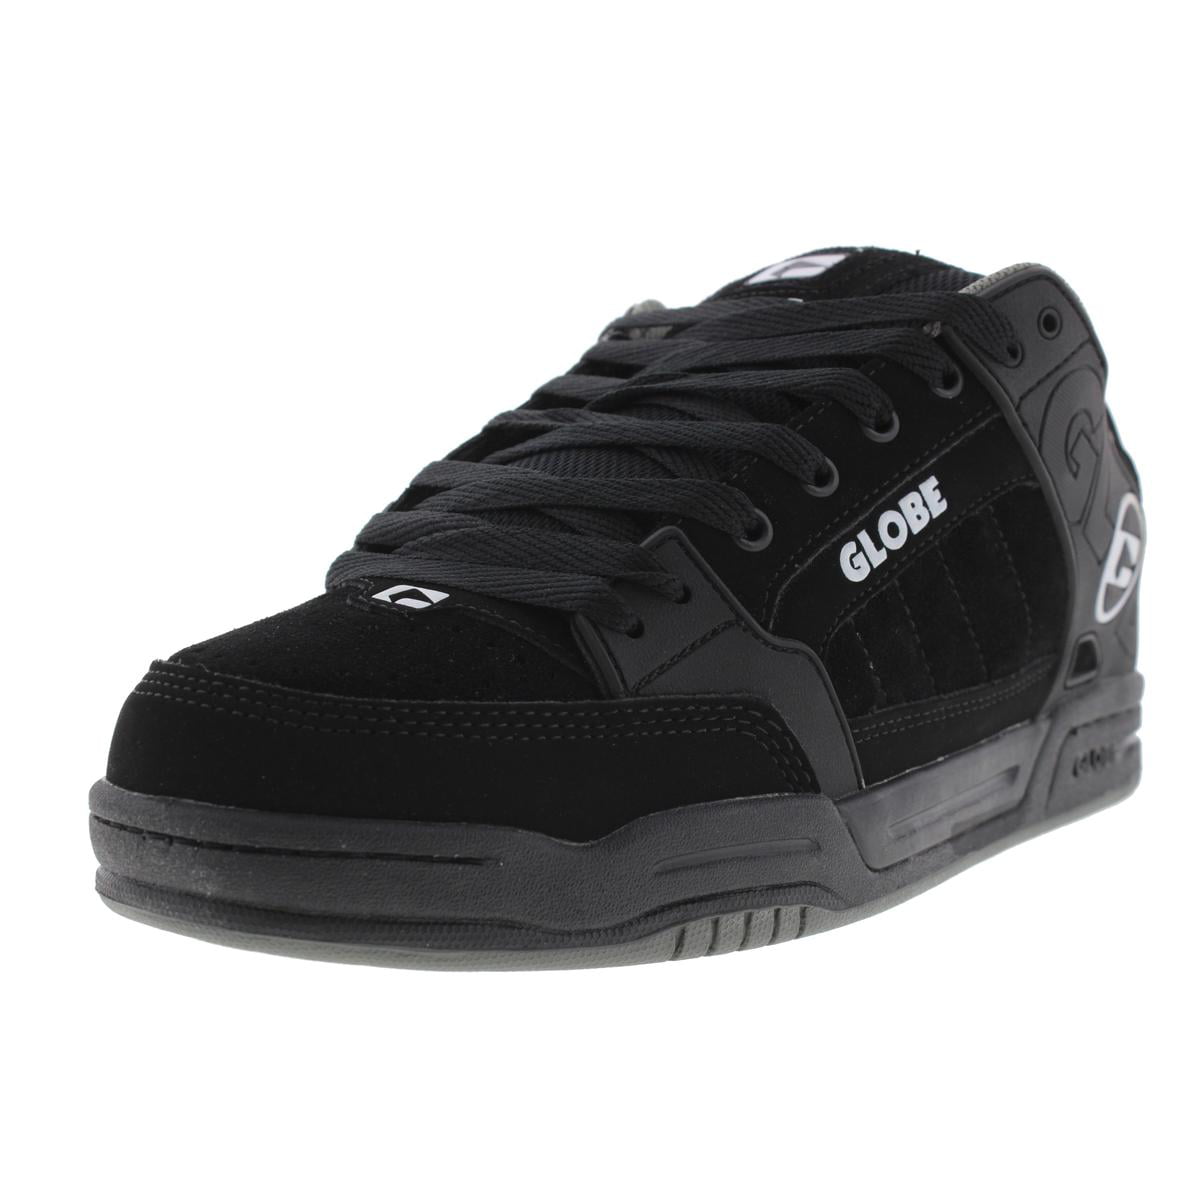 Globe Tilt GBTILT Mens Black Leather Lace Up Athletic Skate Shoes 